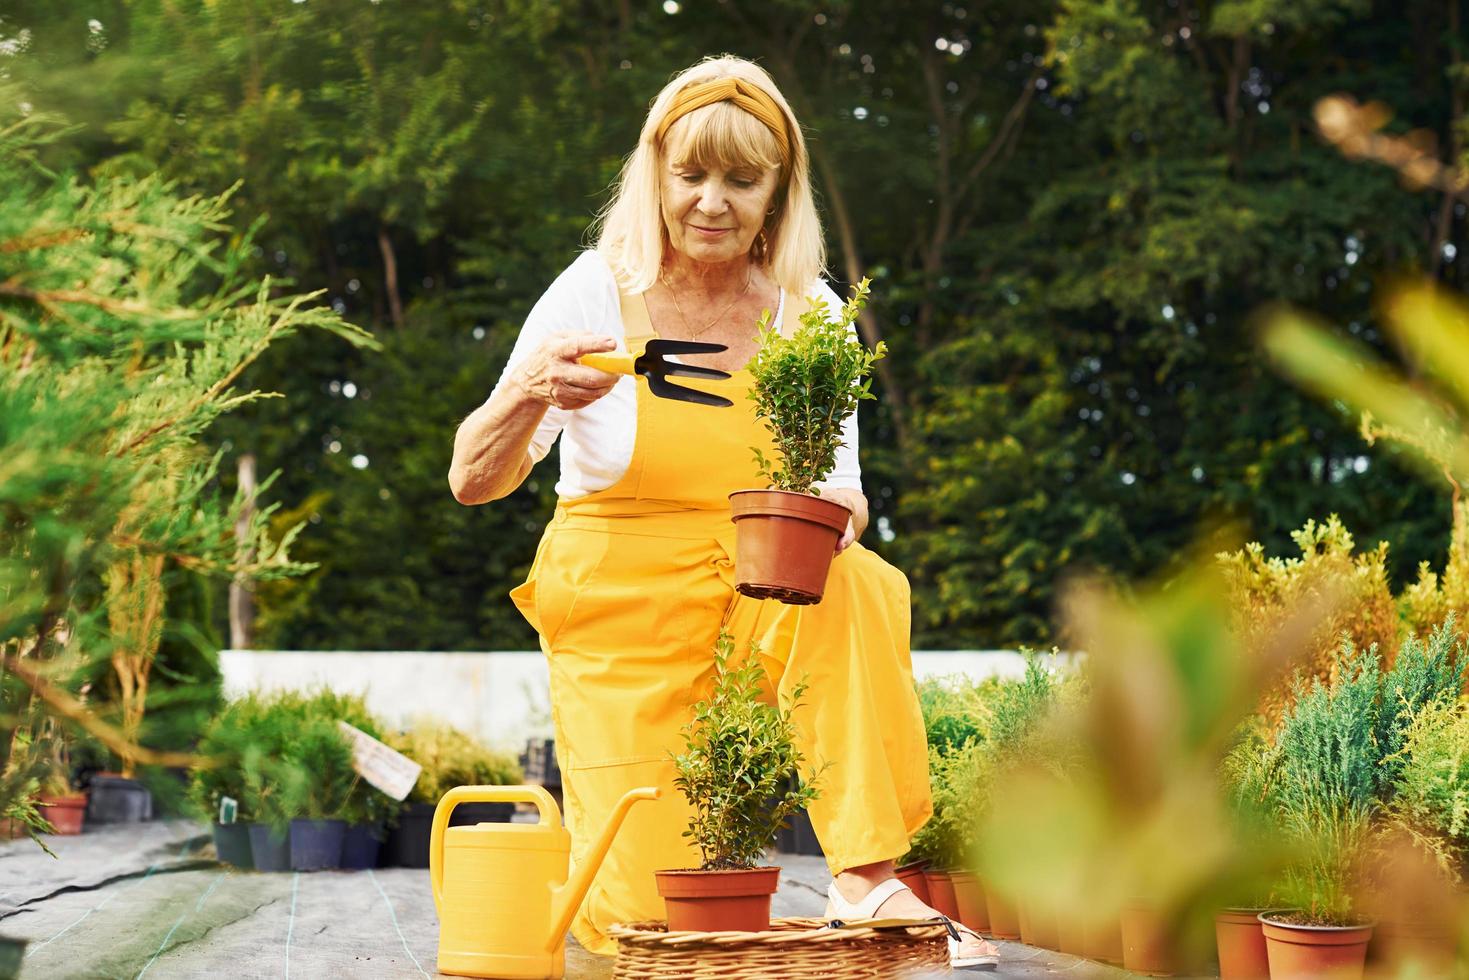 trabalhando com plantas em vasos. mulher sênior de uniforme amarelo está no jardim durante o dia foto